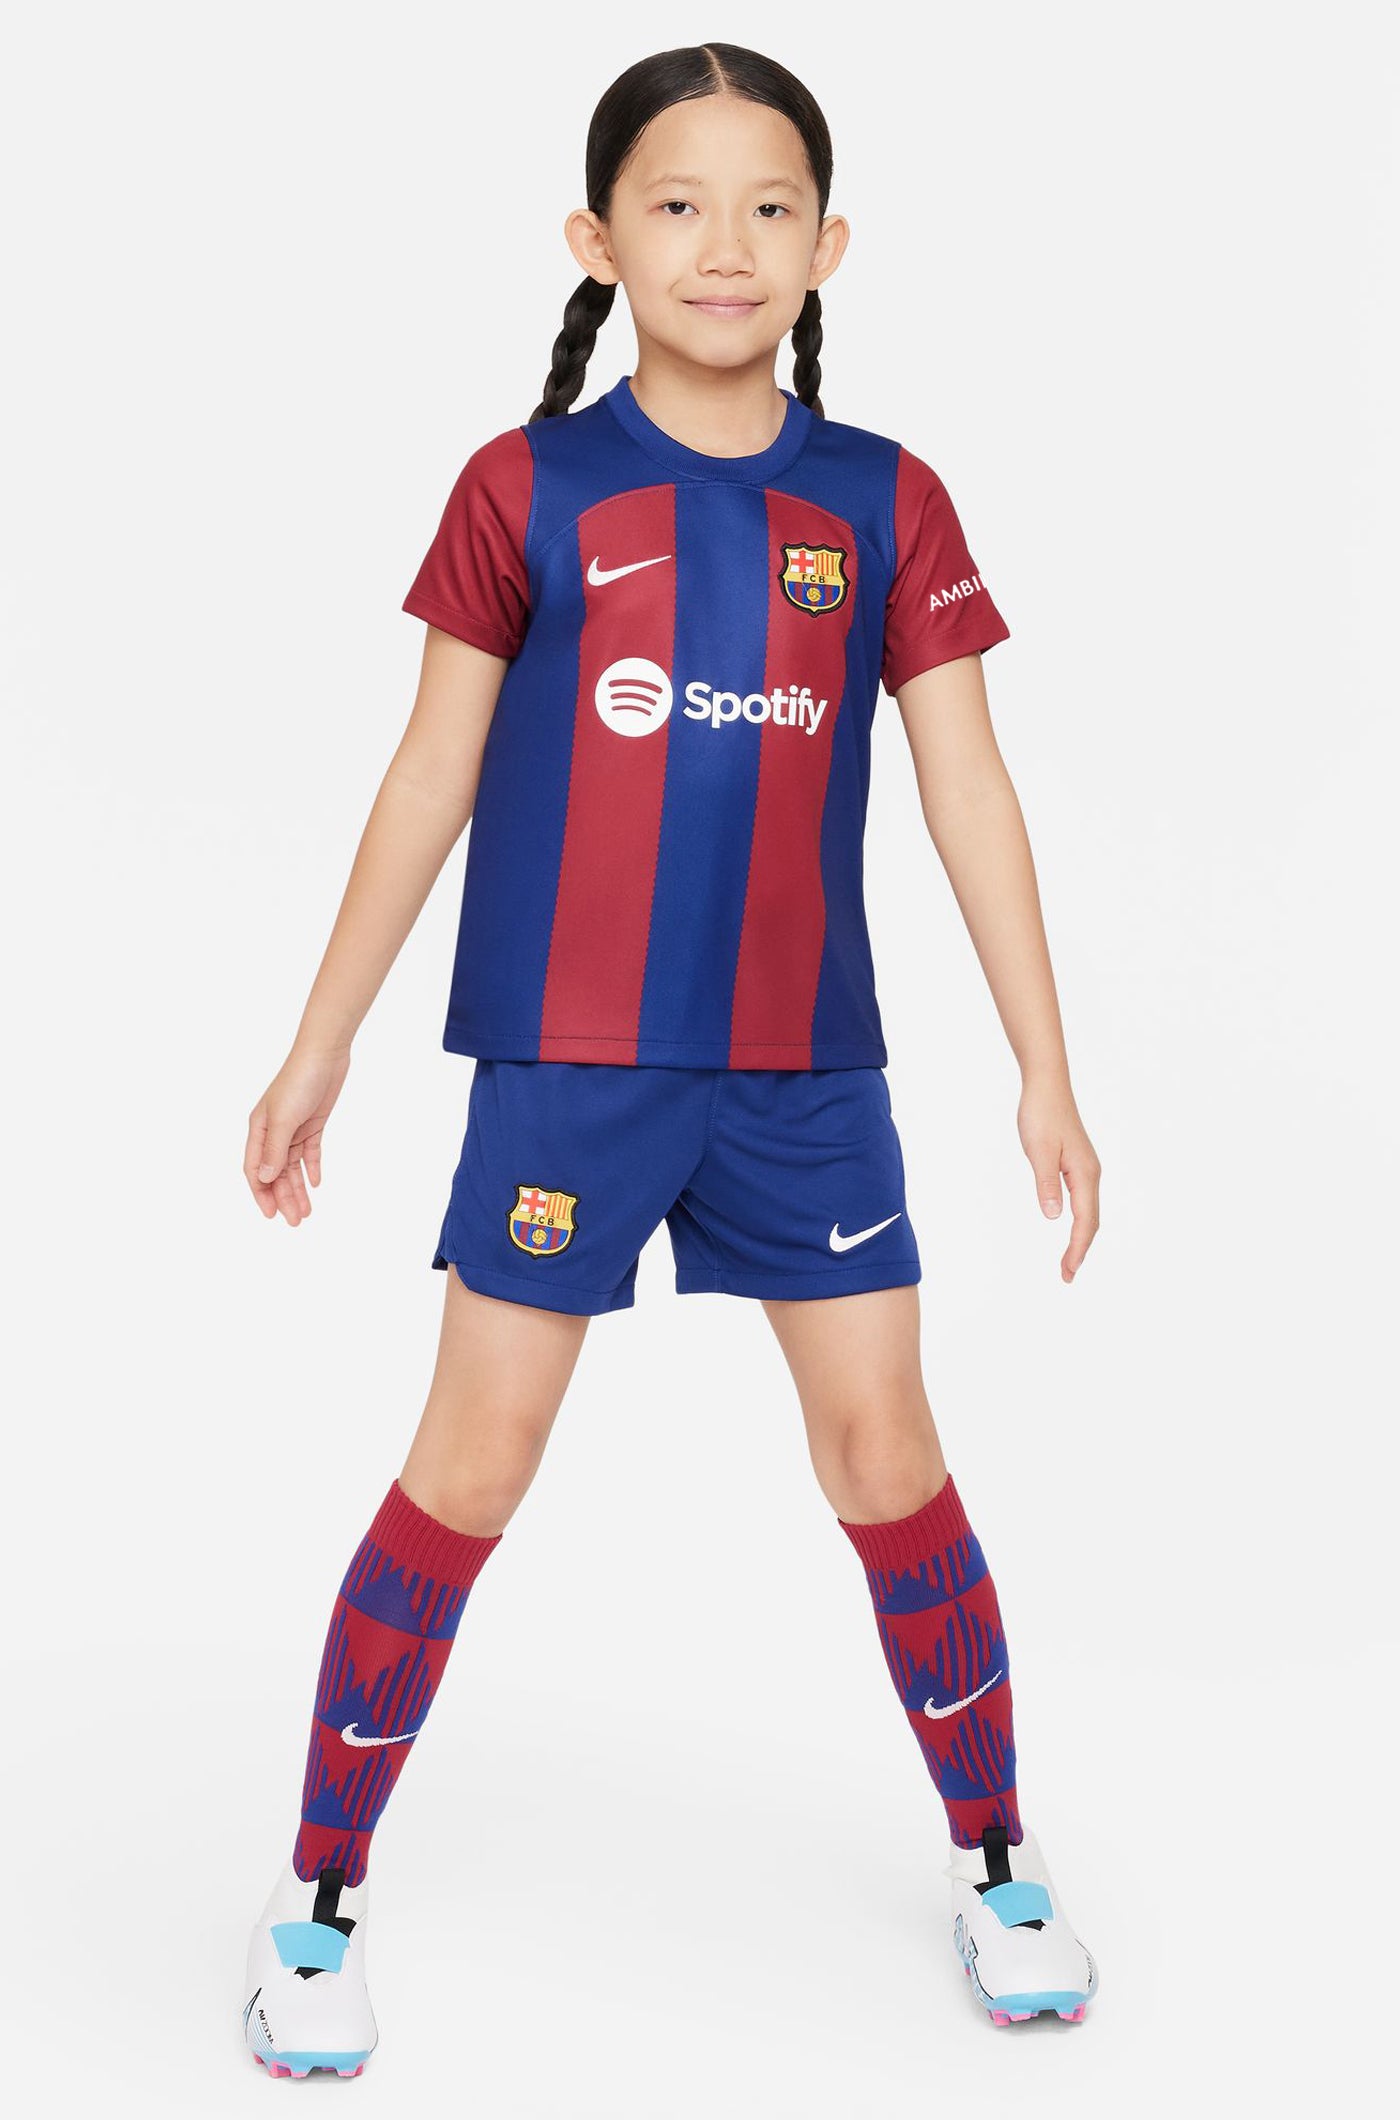 Conjunt primer equipament FC Barcelona 23/24 - Nen/a petit/a - FERRAN 